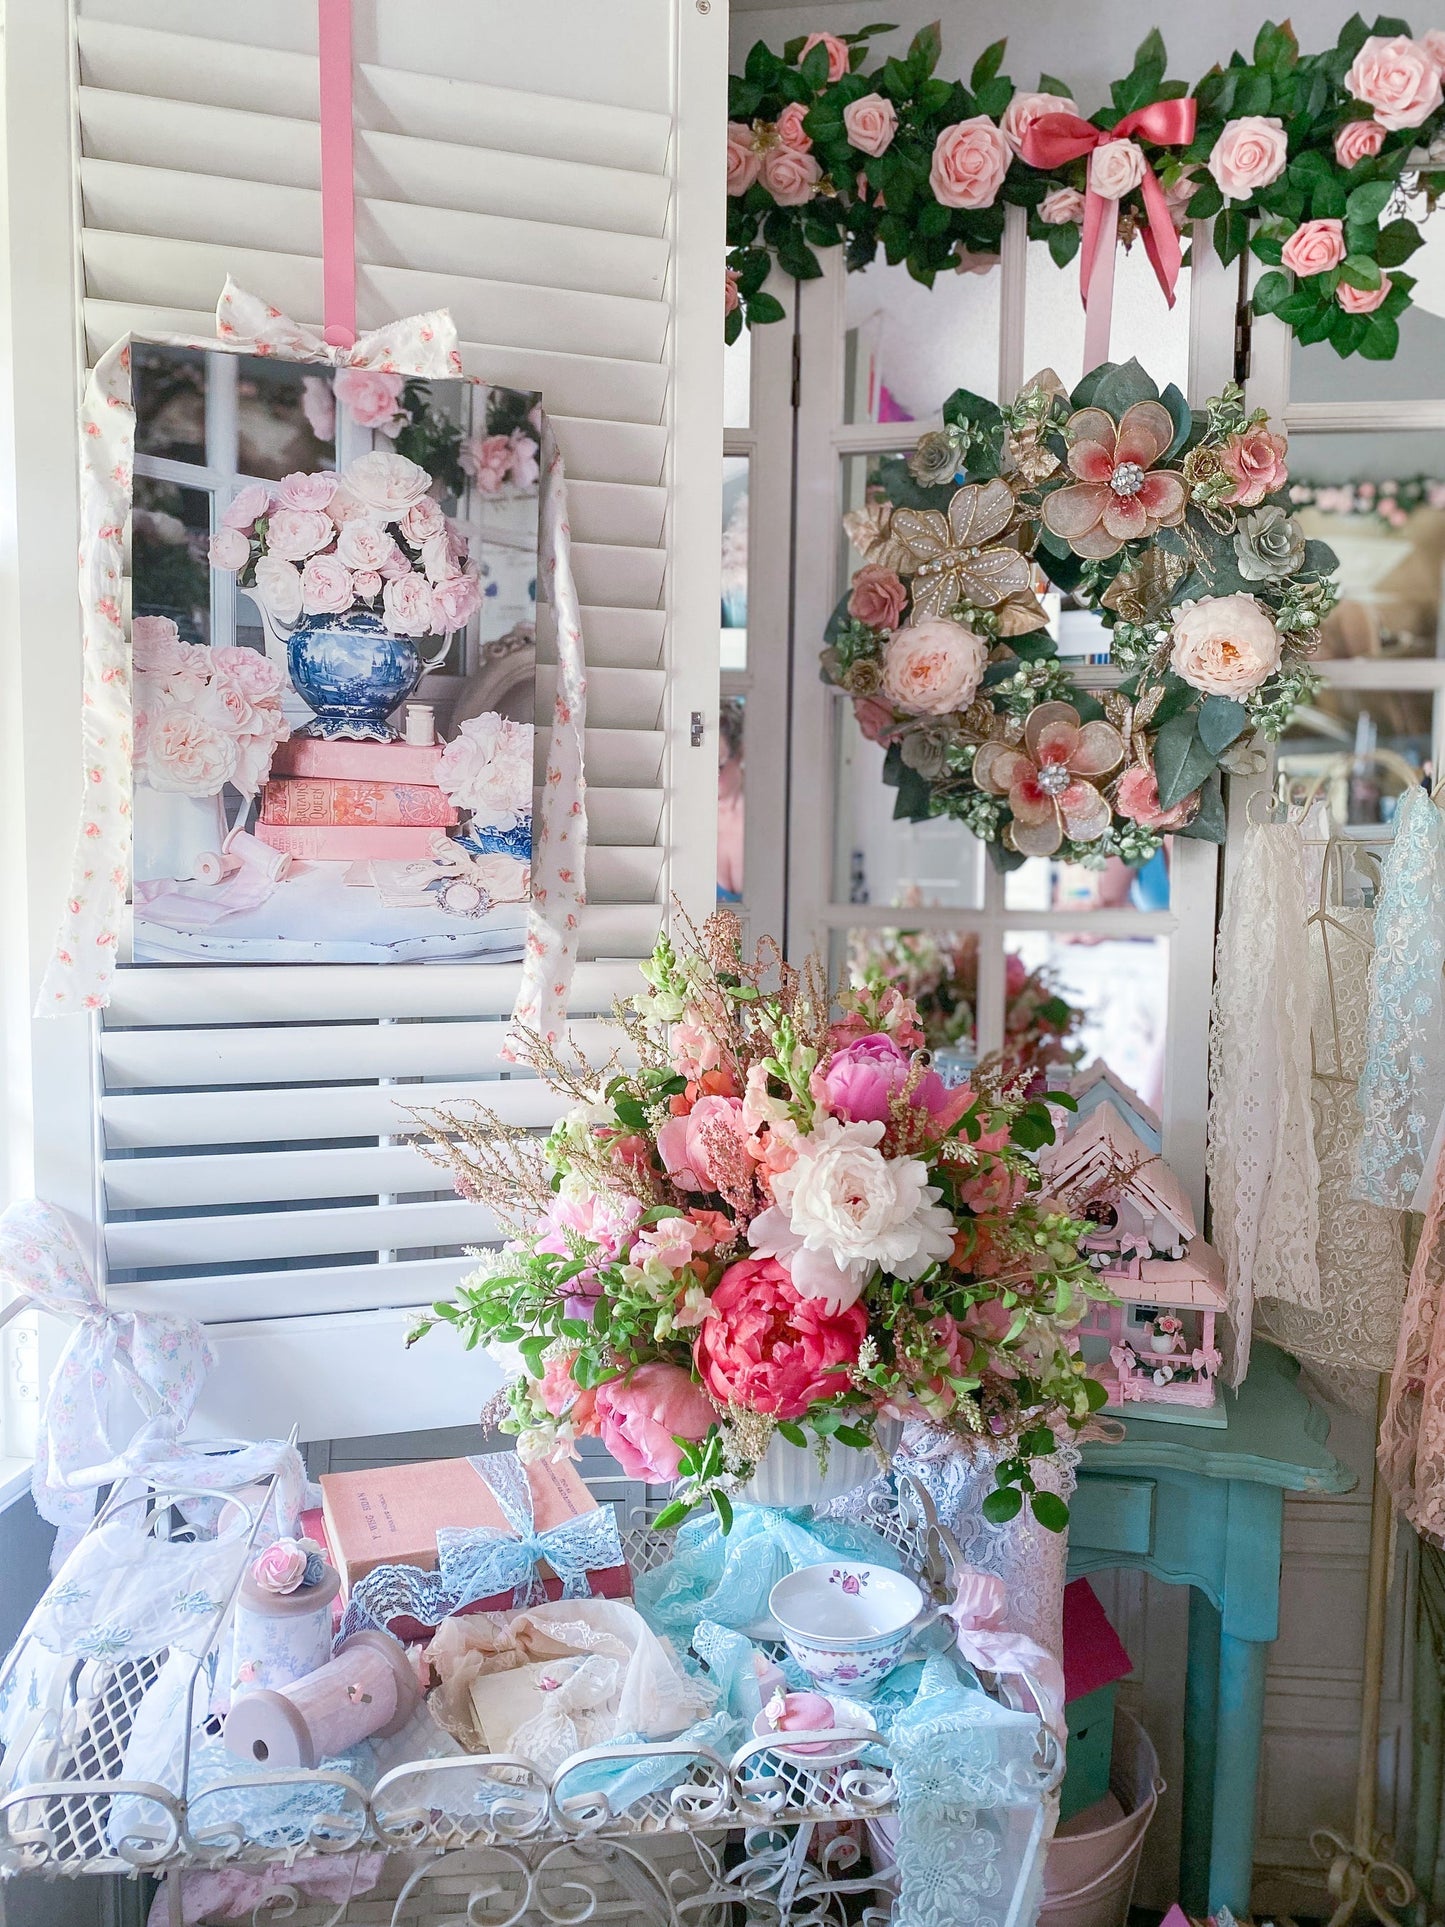 Galerieverpackte Leinwand mit weißem Lattenzaun und rosa Rosen